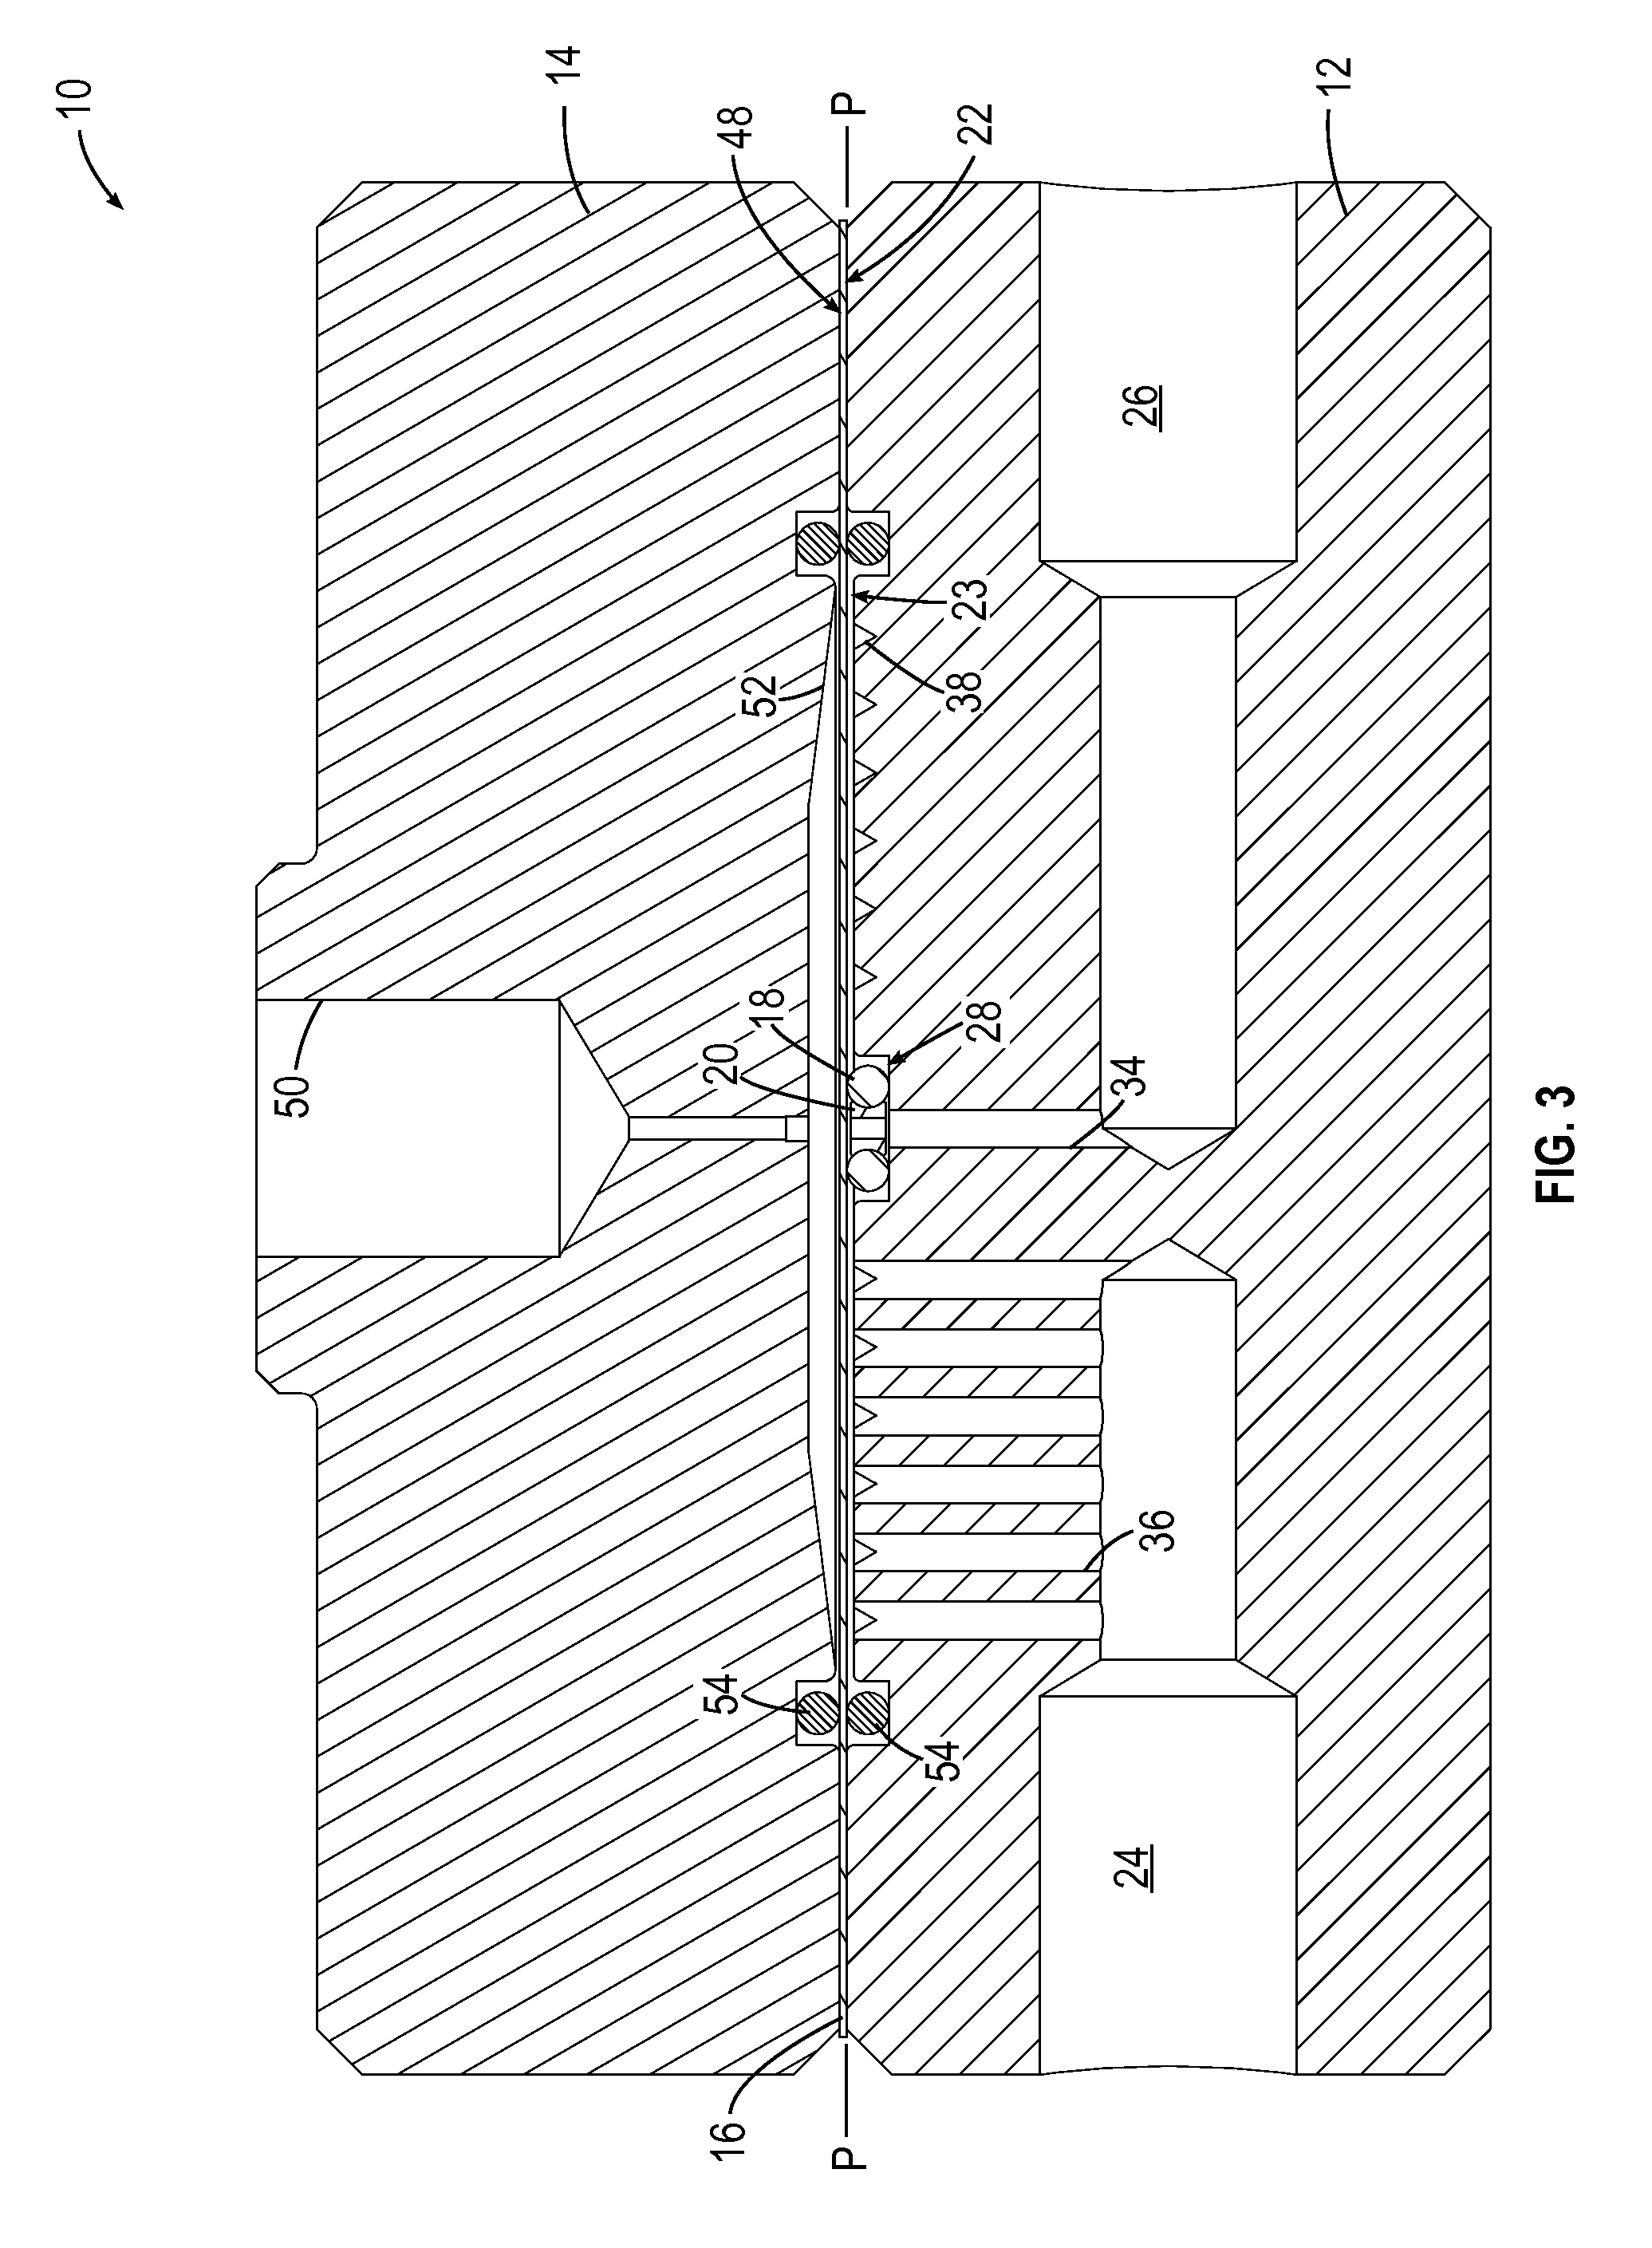 Back pressure regulator with floating seal support